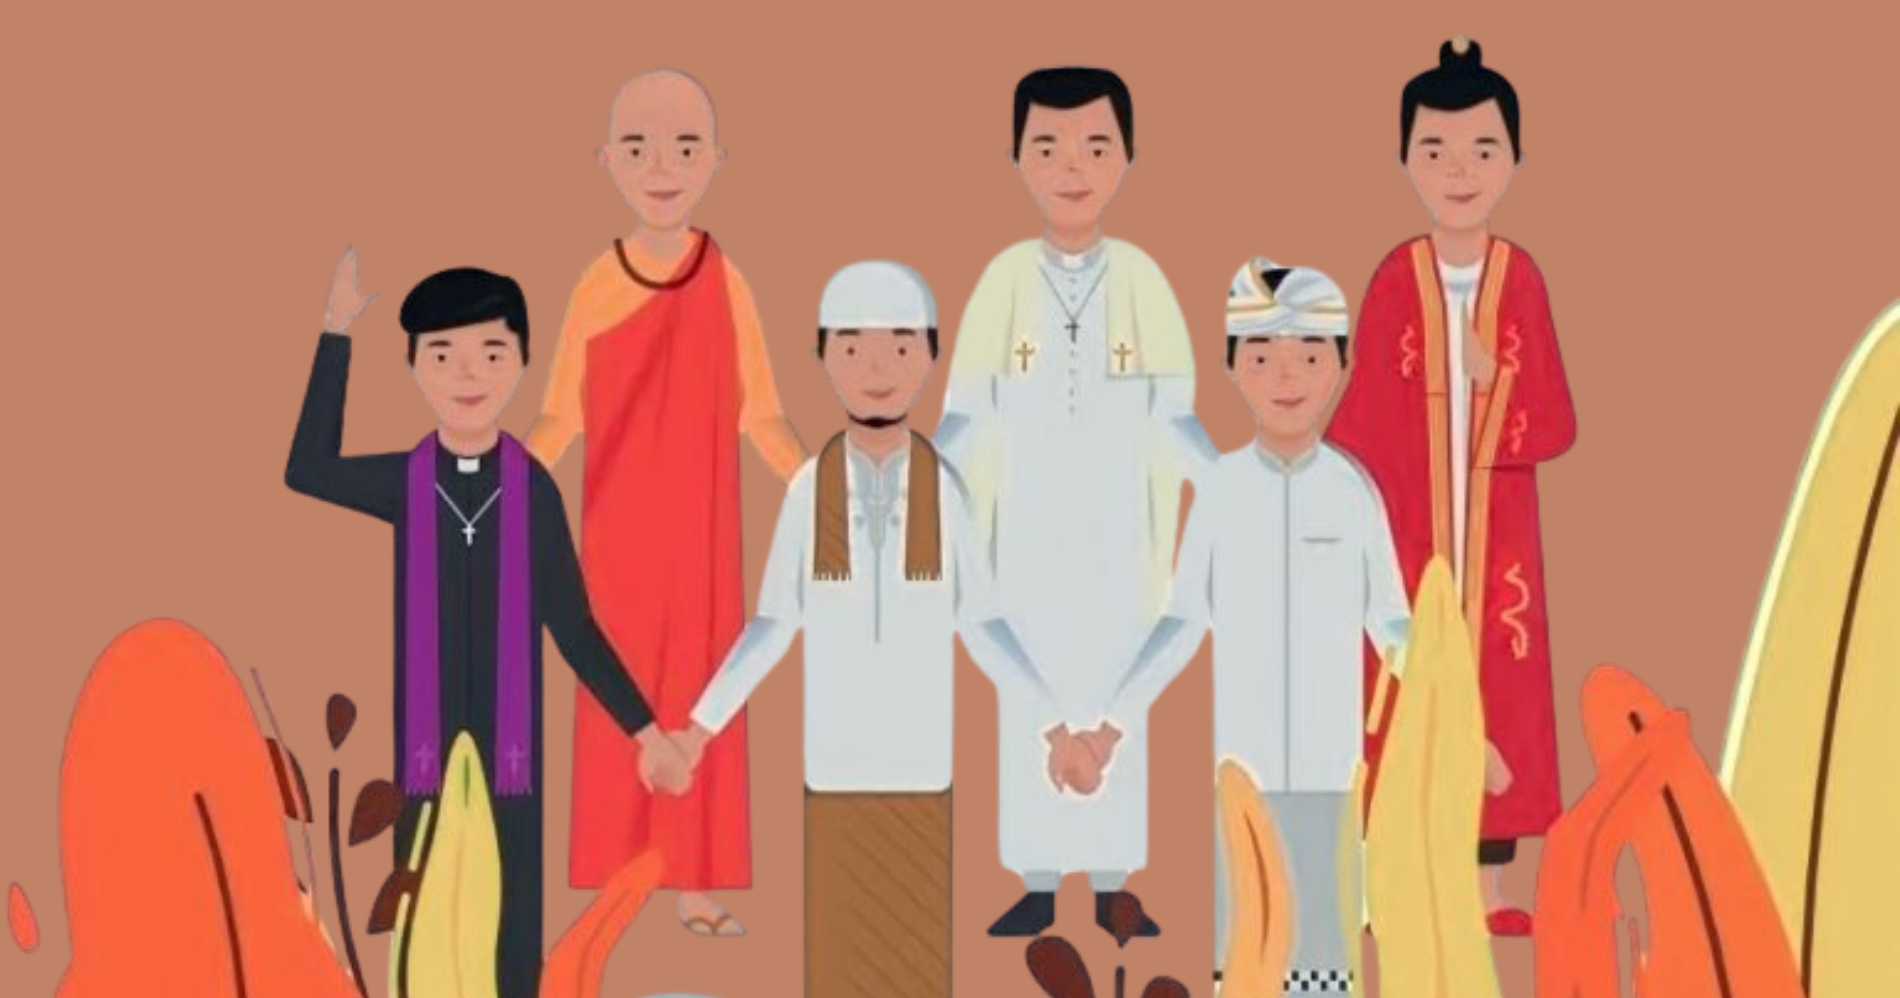 Ilustrasi Toleransi dalam Beragaman (Canva.com)